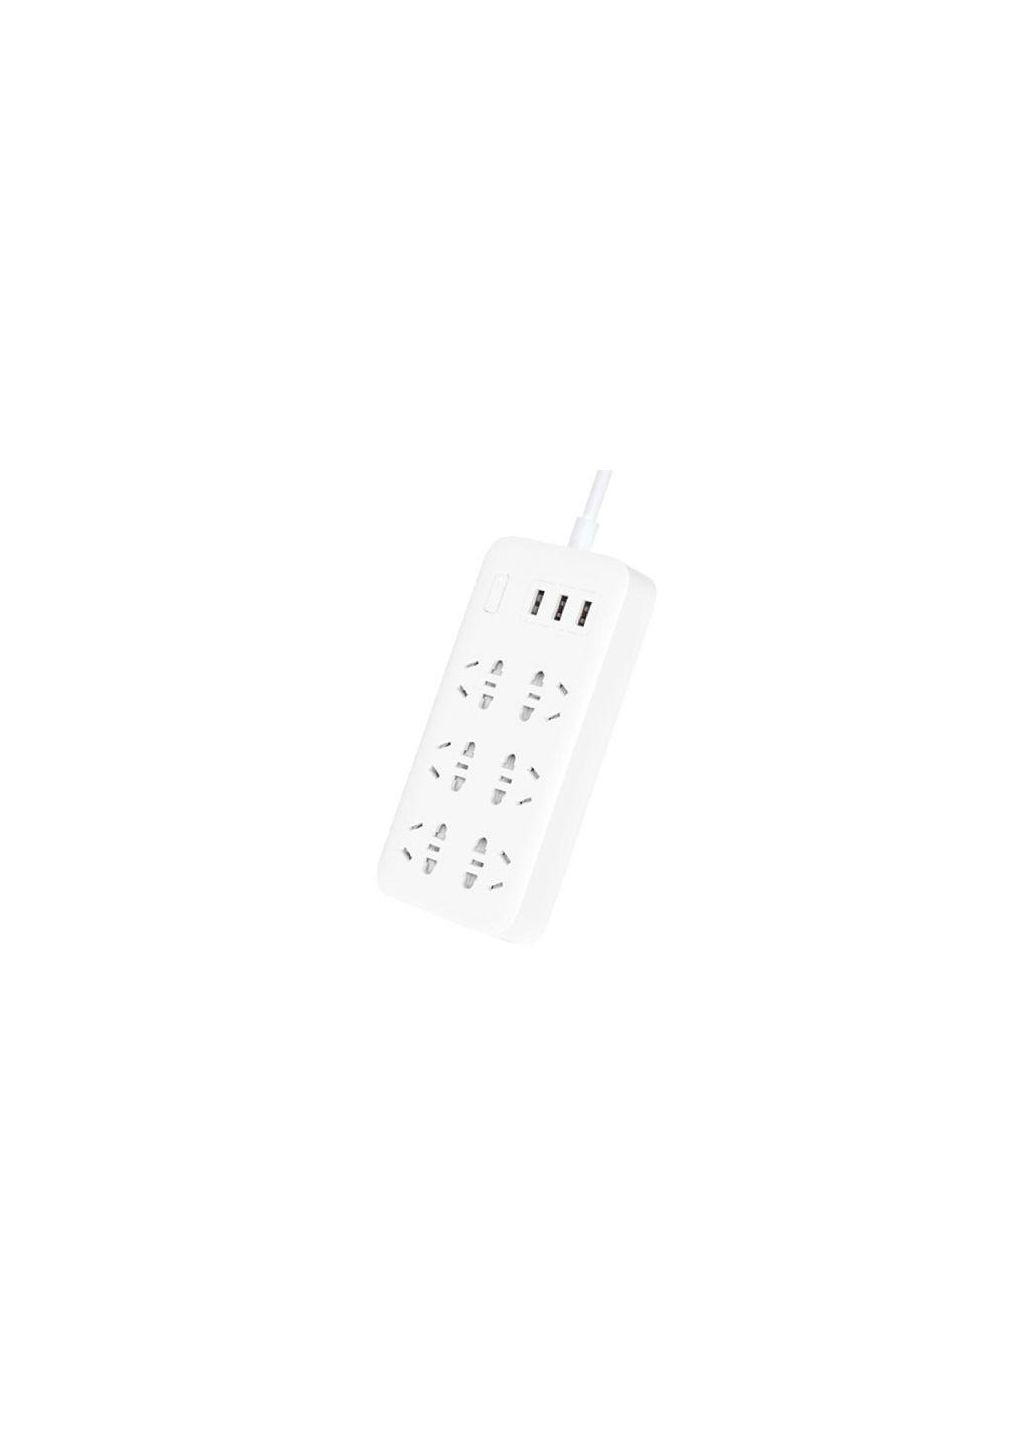 Удлинитель Mi Power Strip (6 розеток + 3 USBport) фильтр универсальный белый Xiaomi (280877598)